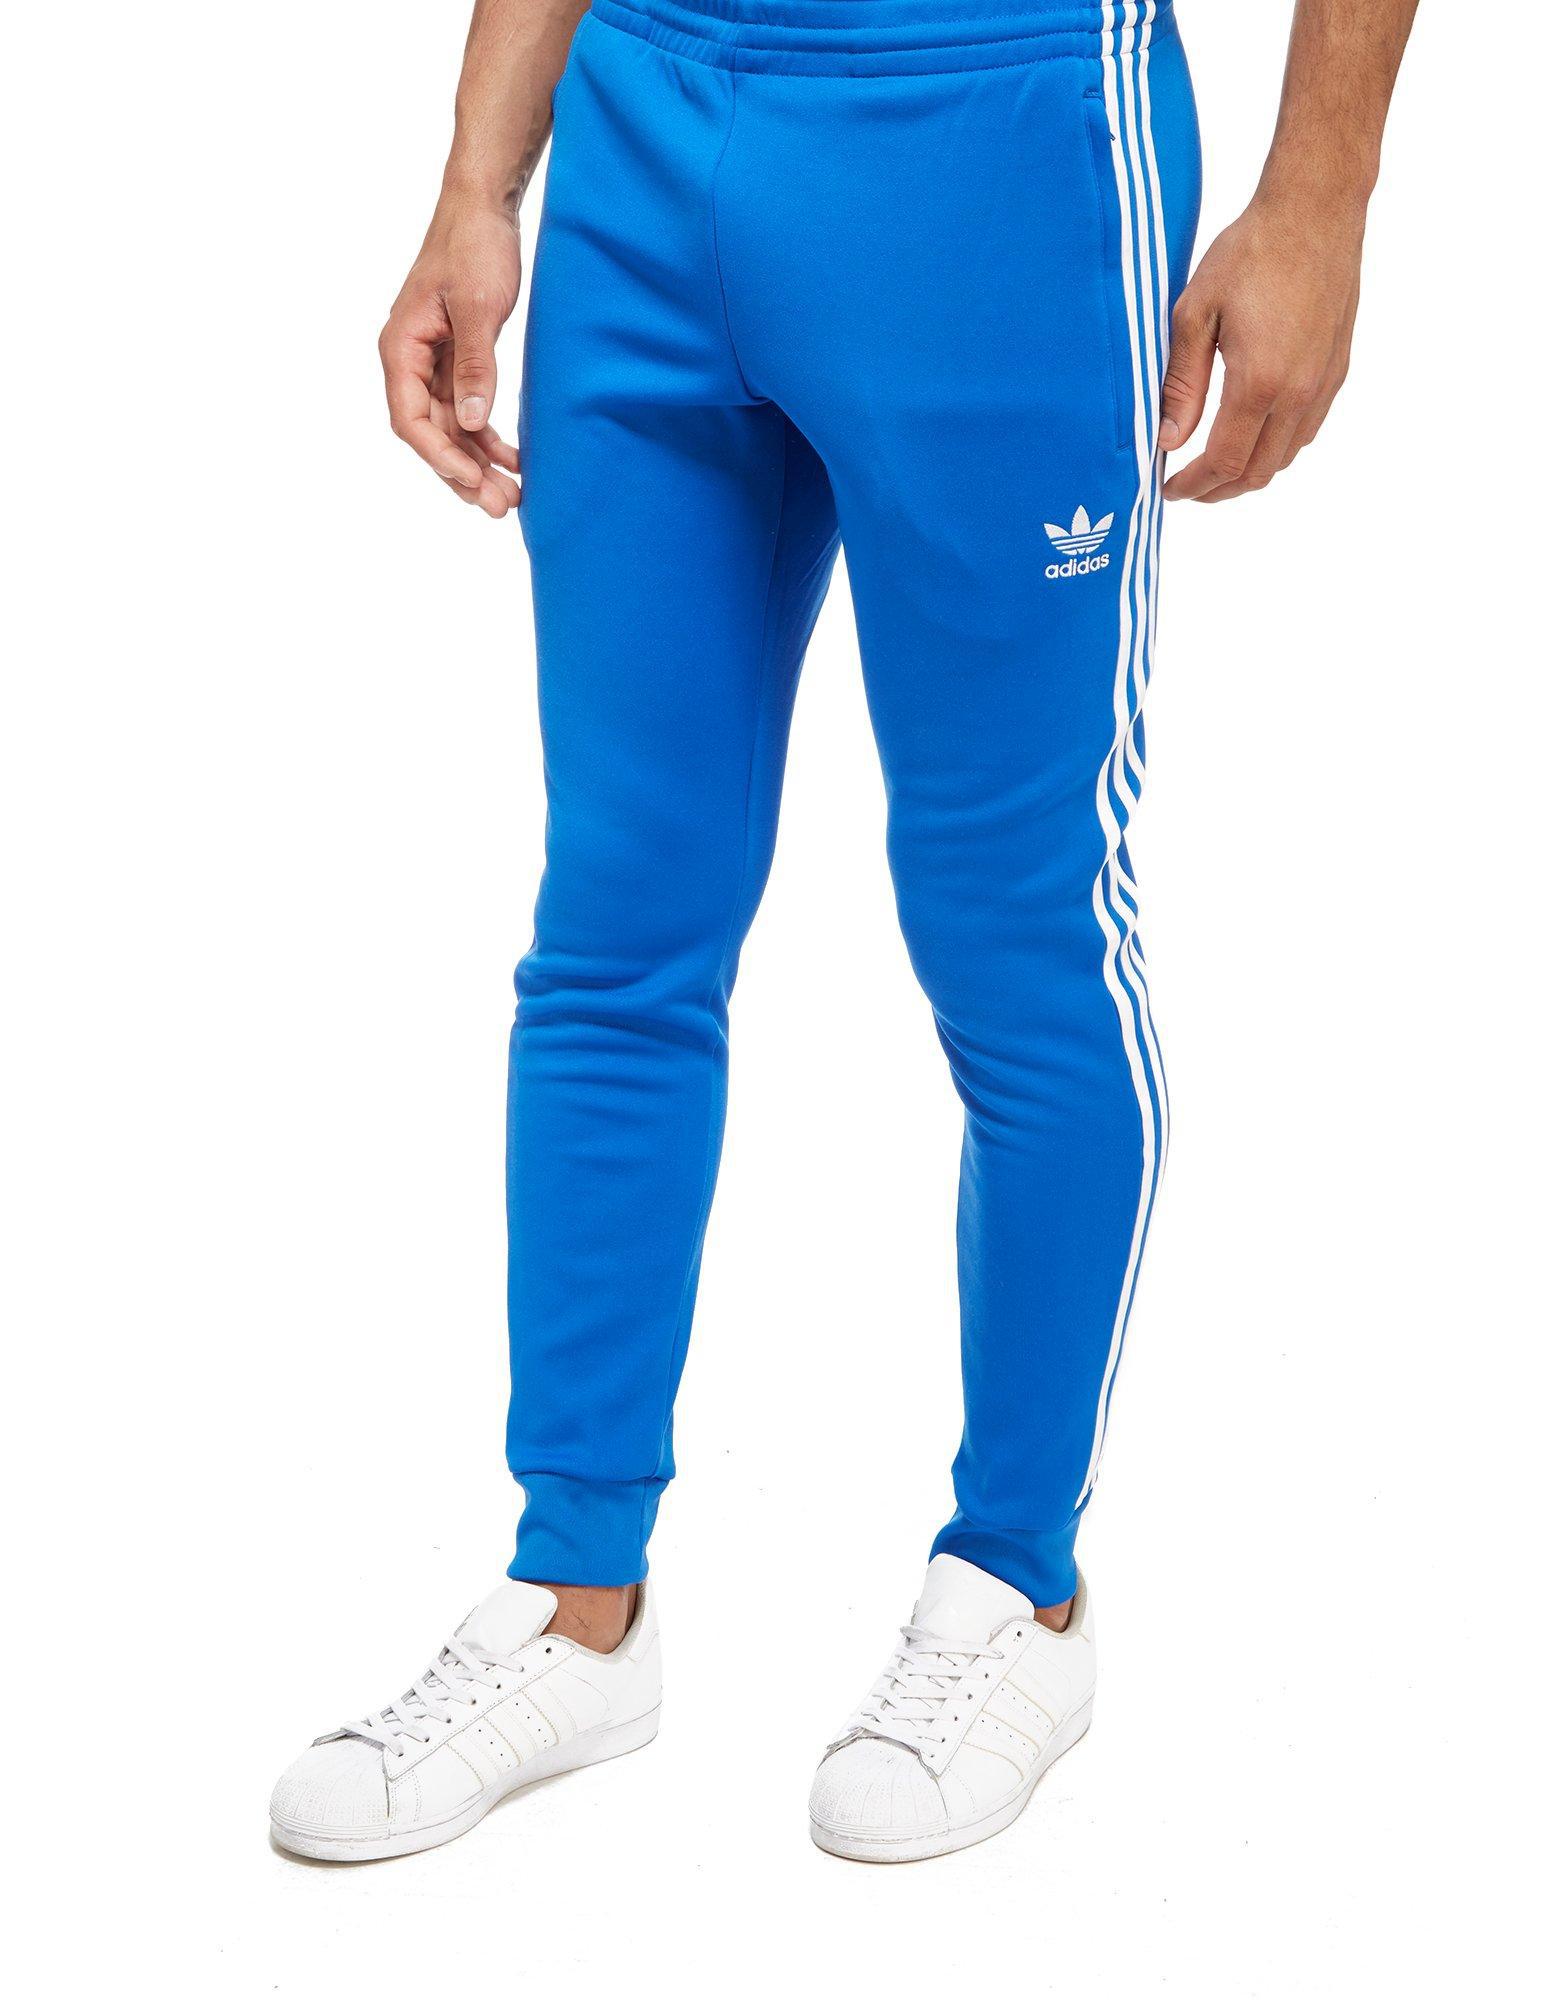 adidas Originals 3-stripes Superstar Track Pants in Blue for Men - Lyst